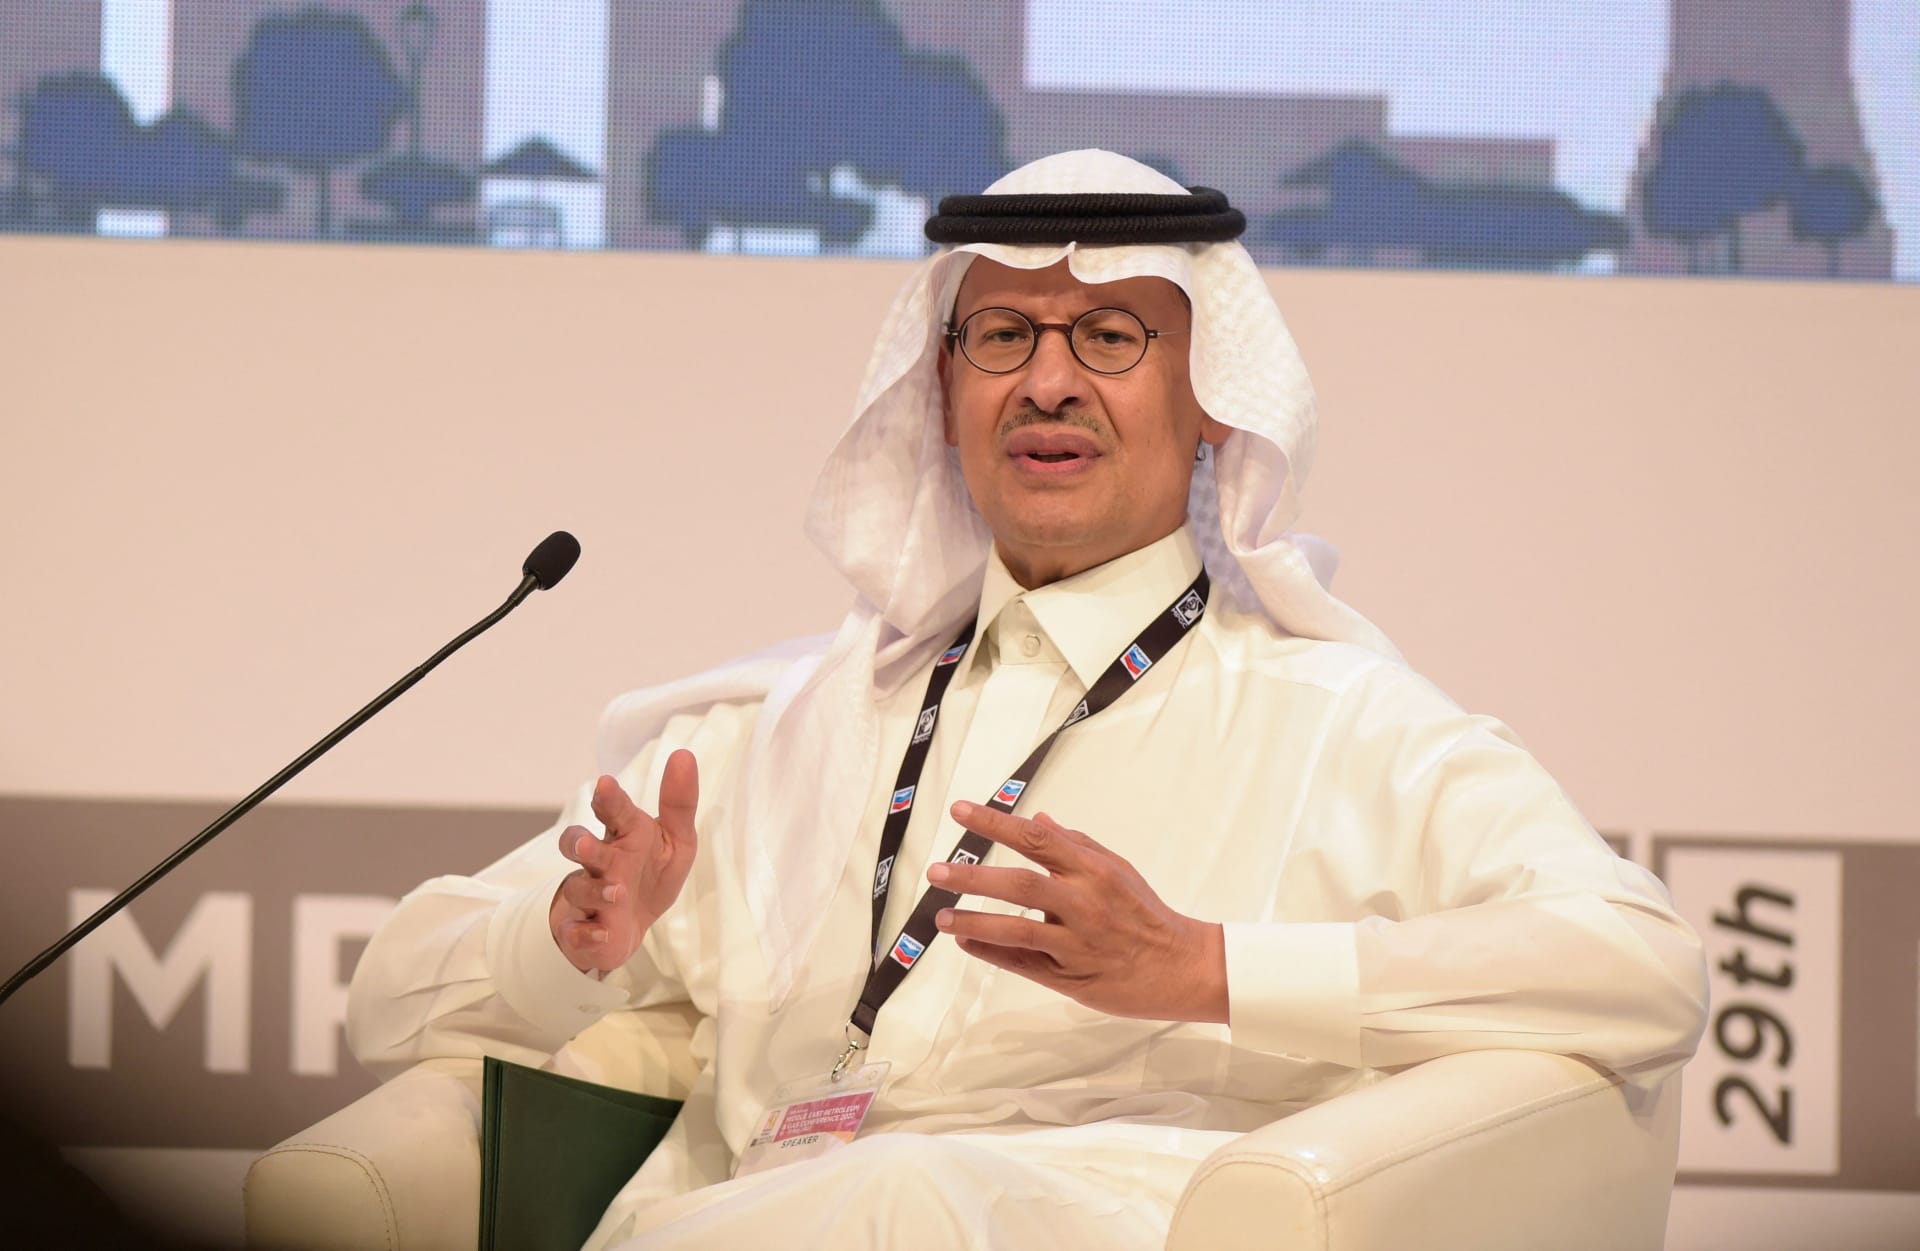   وزير الطاقة السعودي: المملكة تسعى لاستخدام اليورانيوم المحلي في تصنيع الوقود النووي